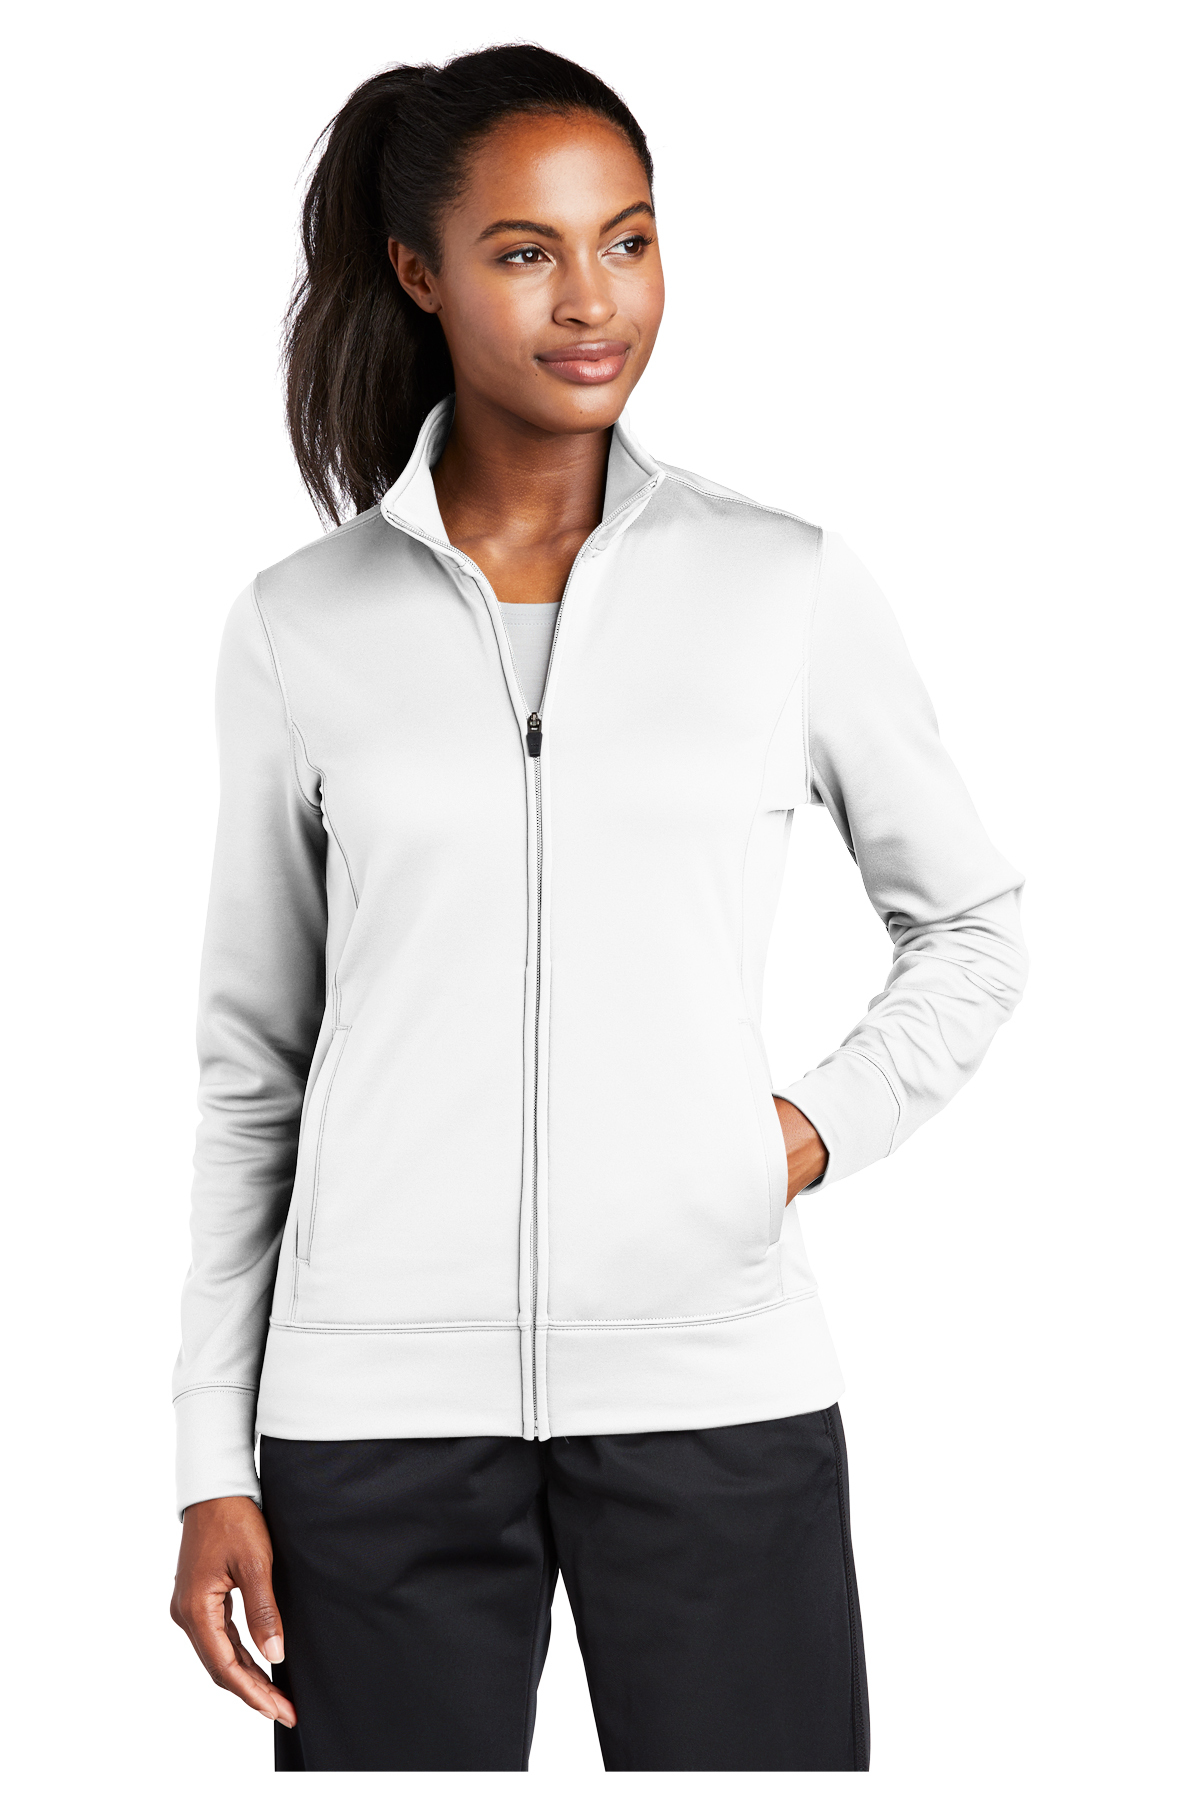 Sport-Tek Women's Full Zip Jacket (LST241) & Pant (LST237) $24.95